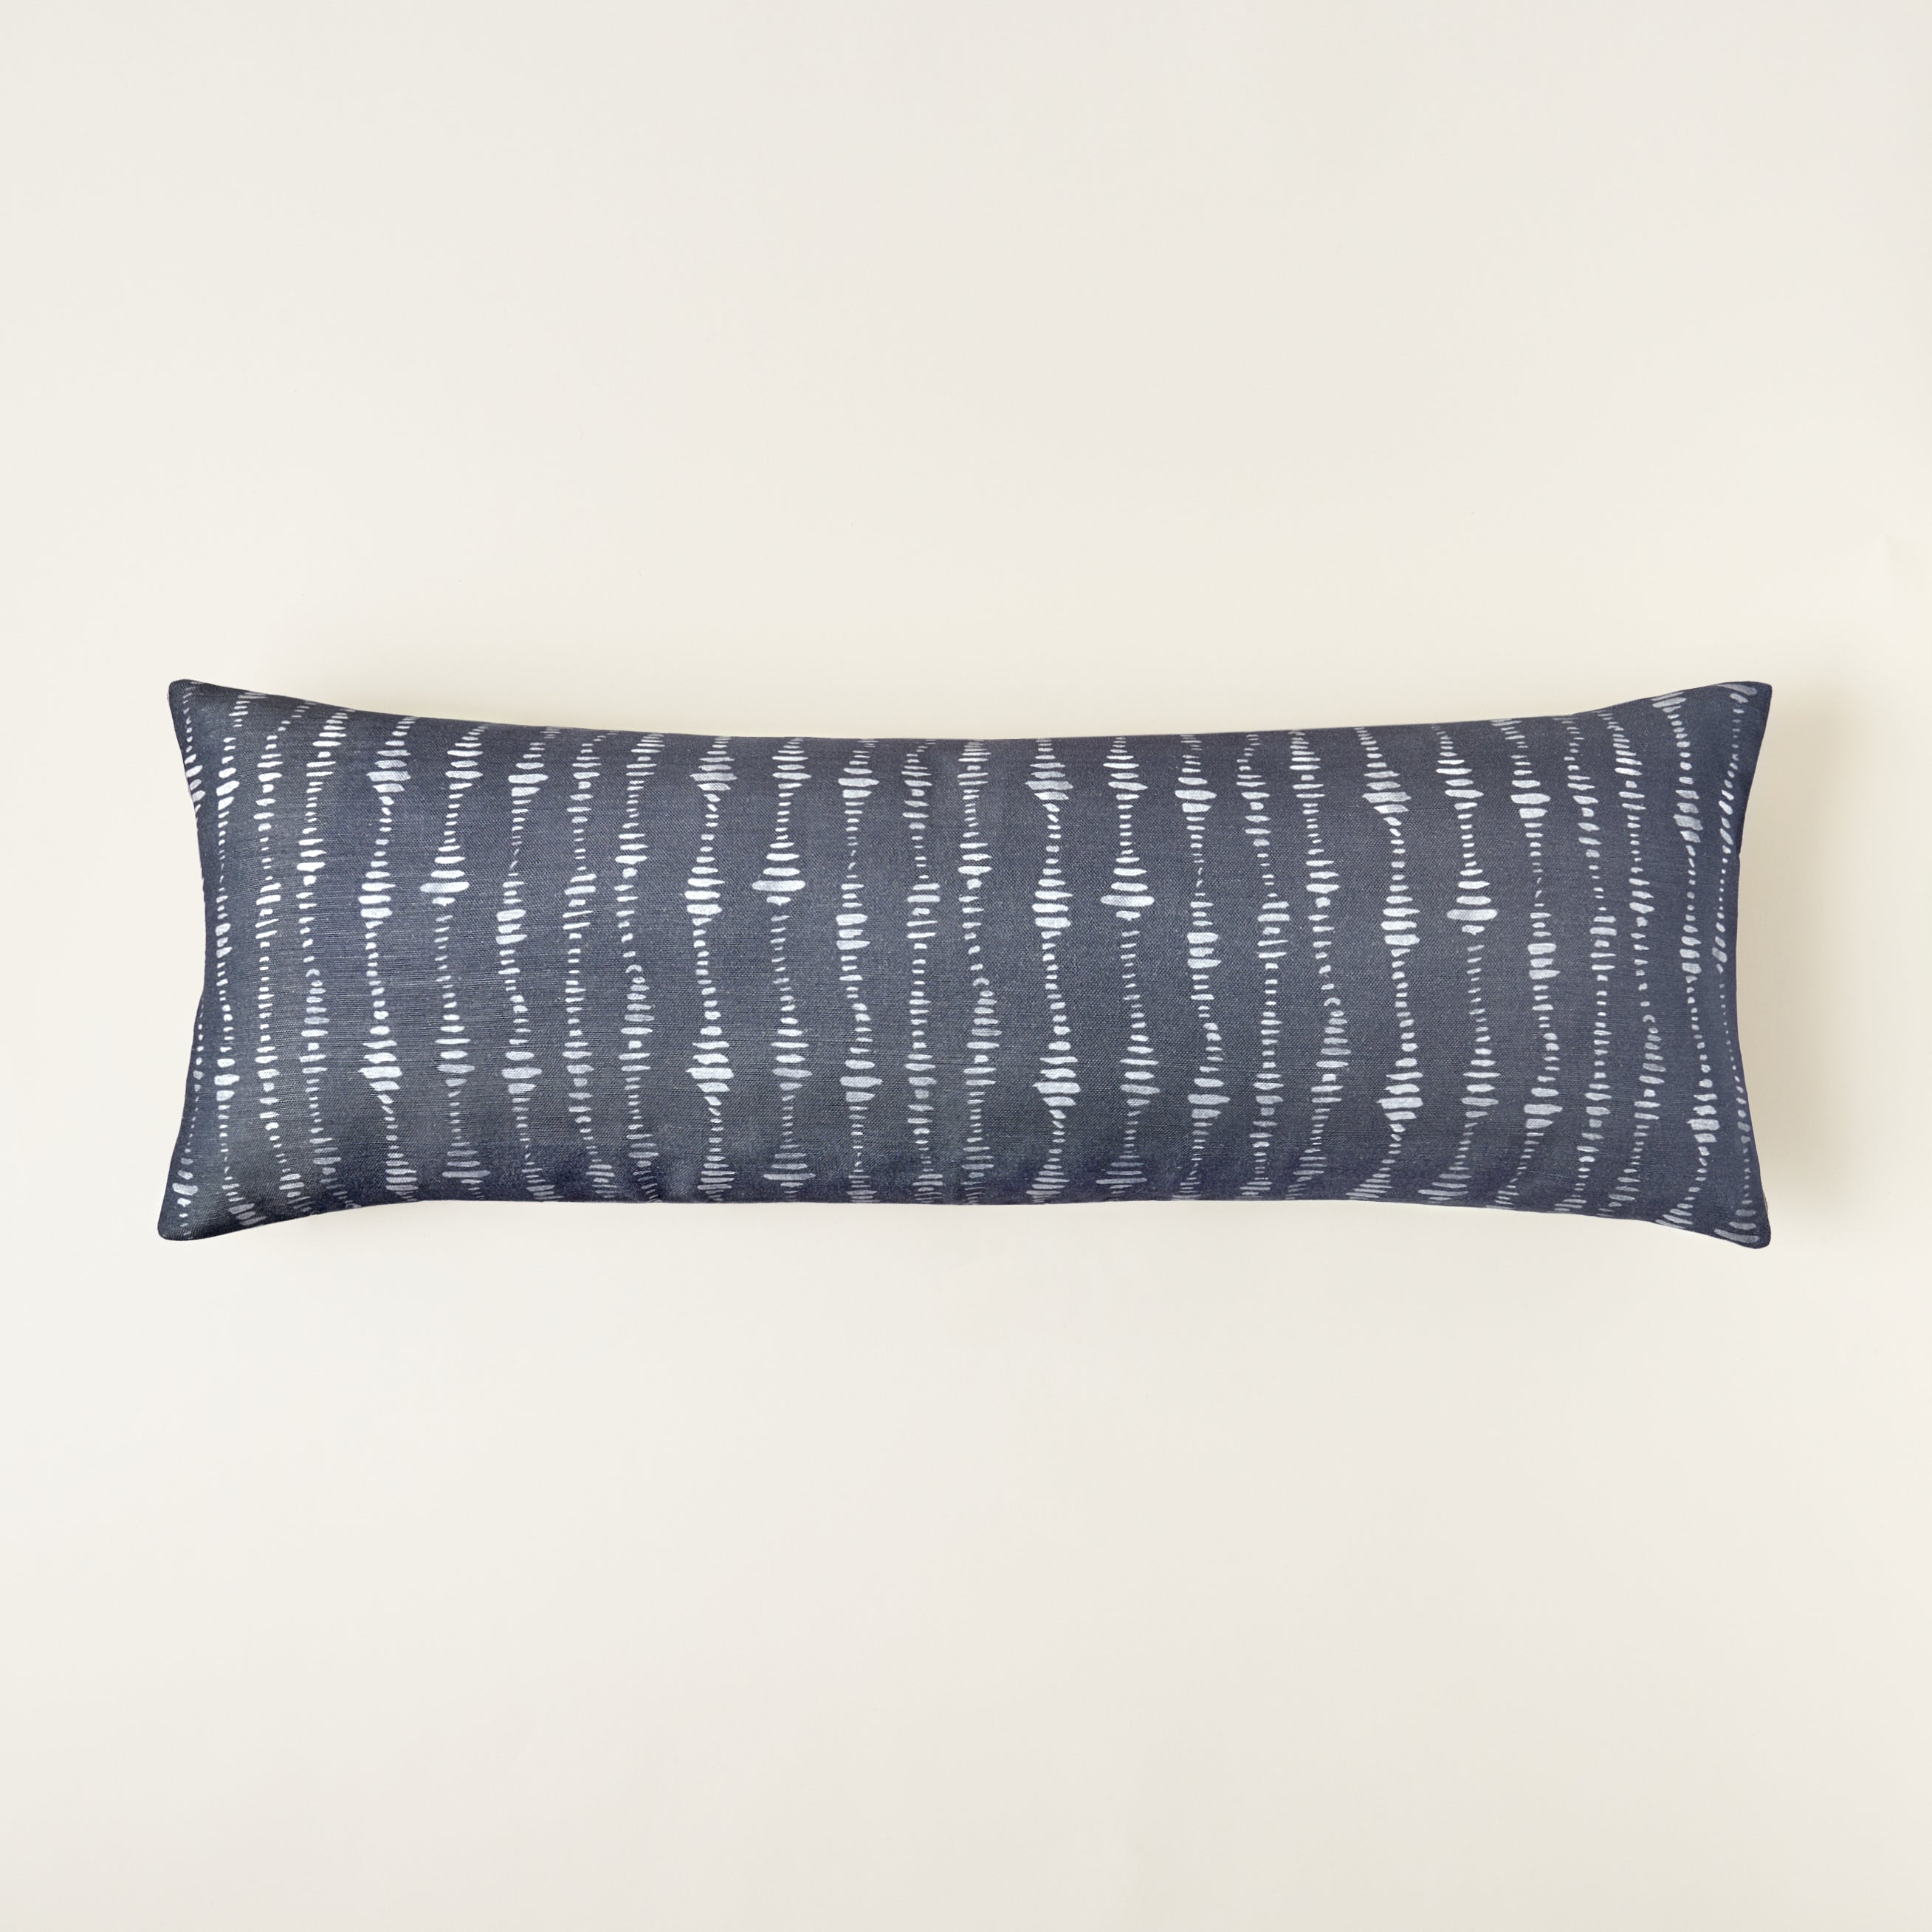 The Myla Pillow Cover - 14" x 36" Lumbar